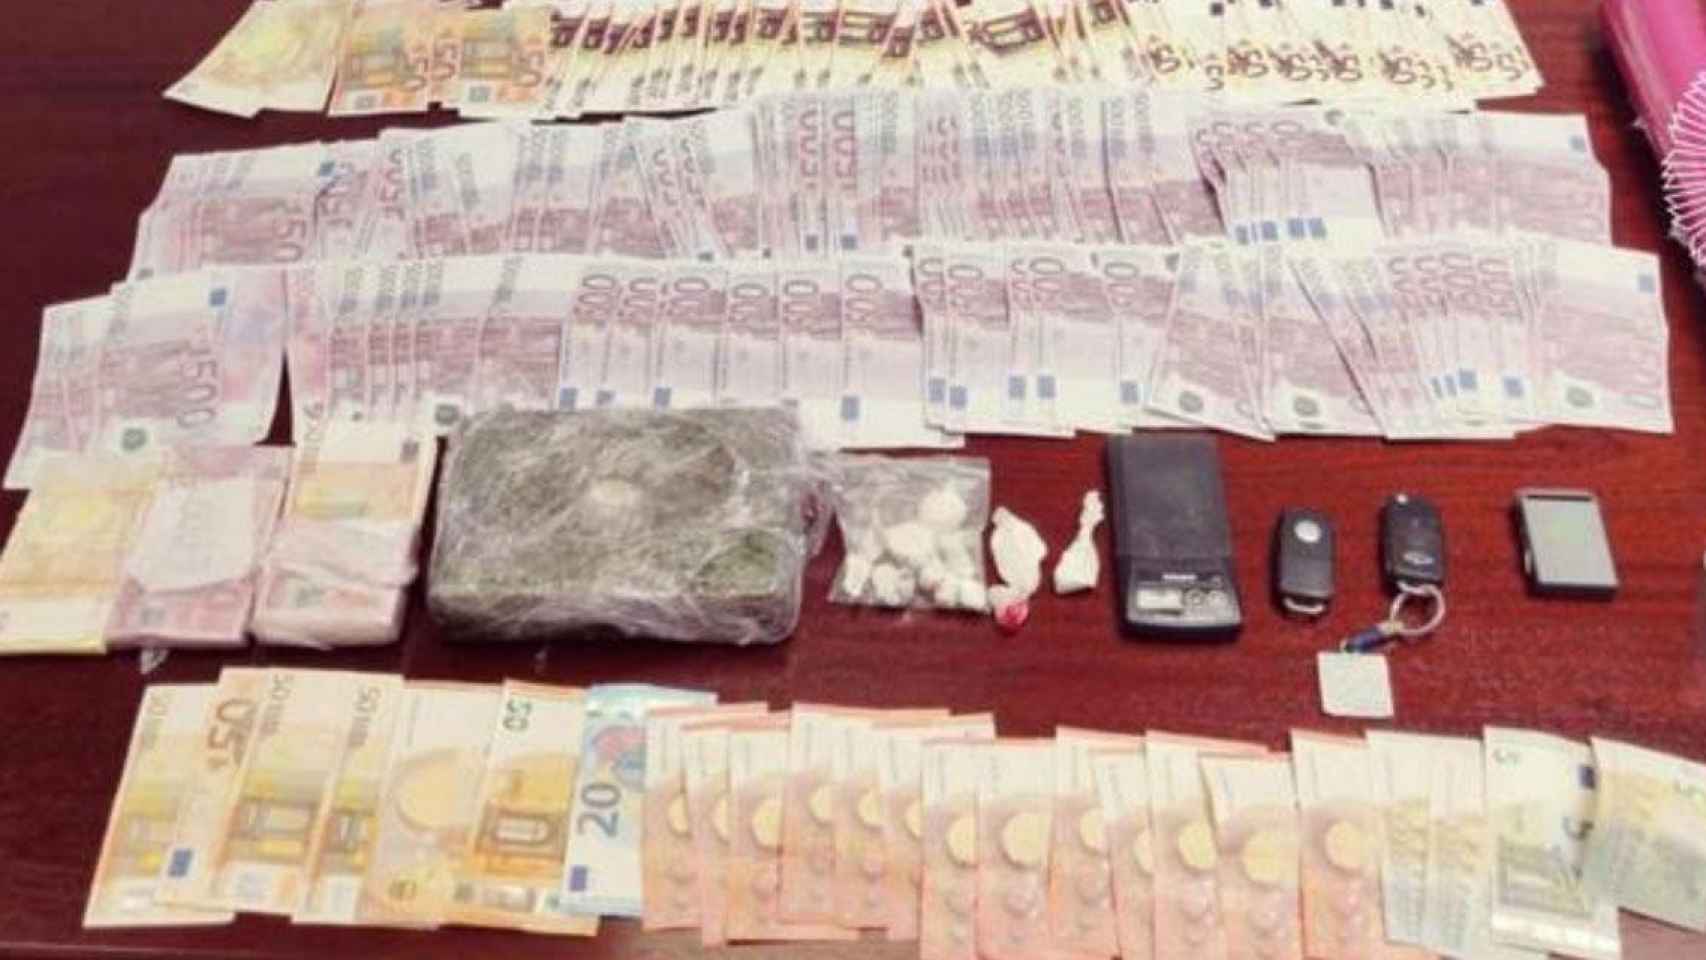 La policía incauta un kilo de cocaína y 99.000 euros falsos a un peluquero / POLICÍA